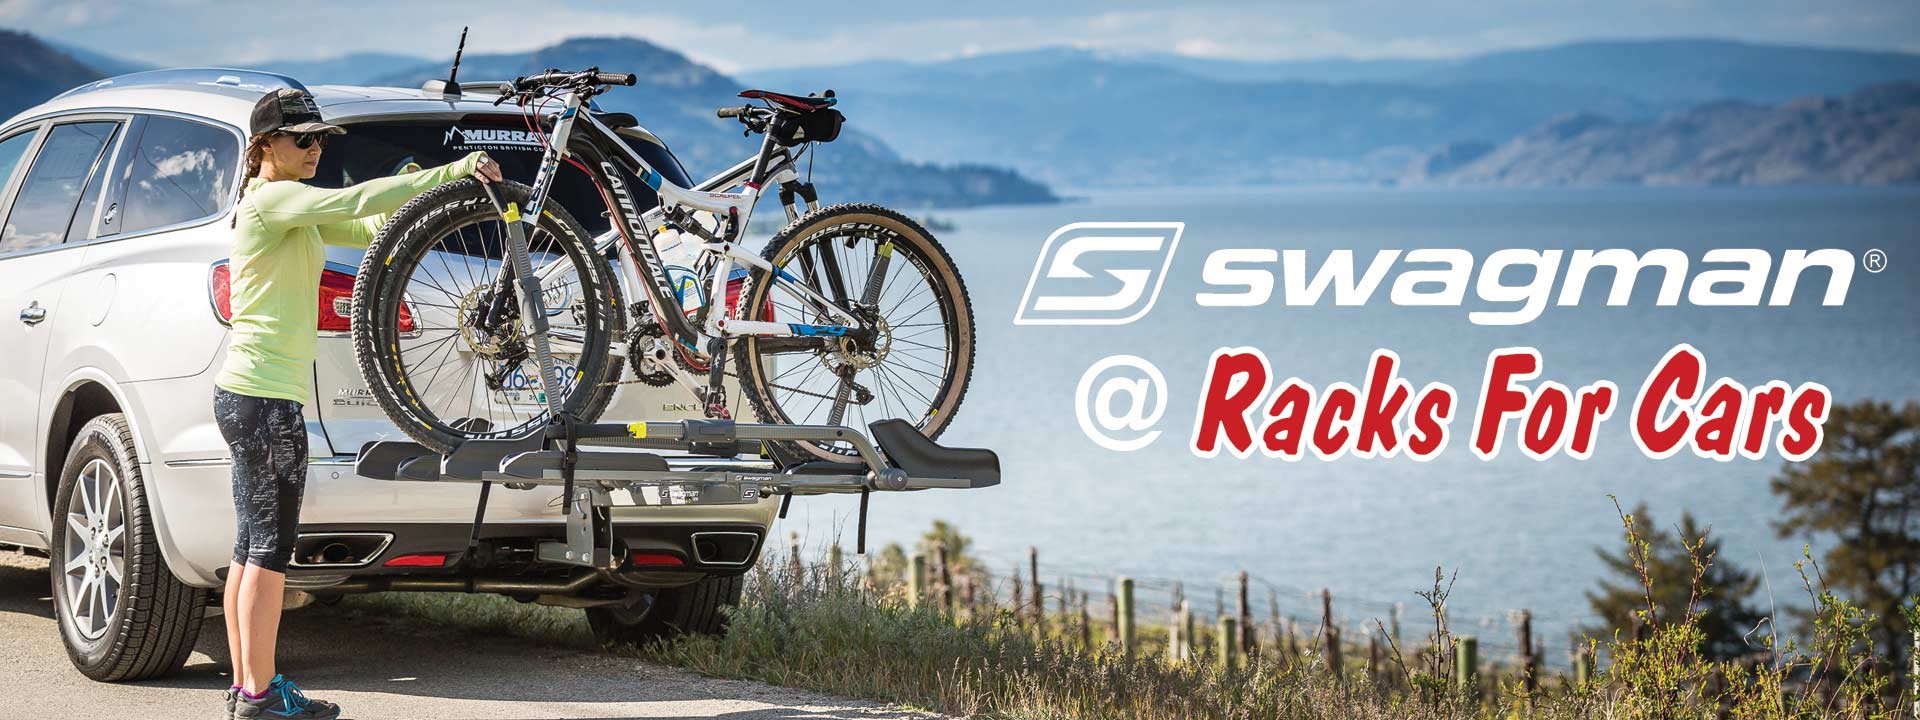 swagman bike rv rack